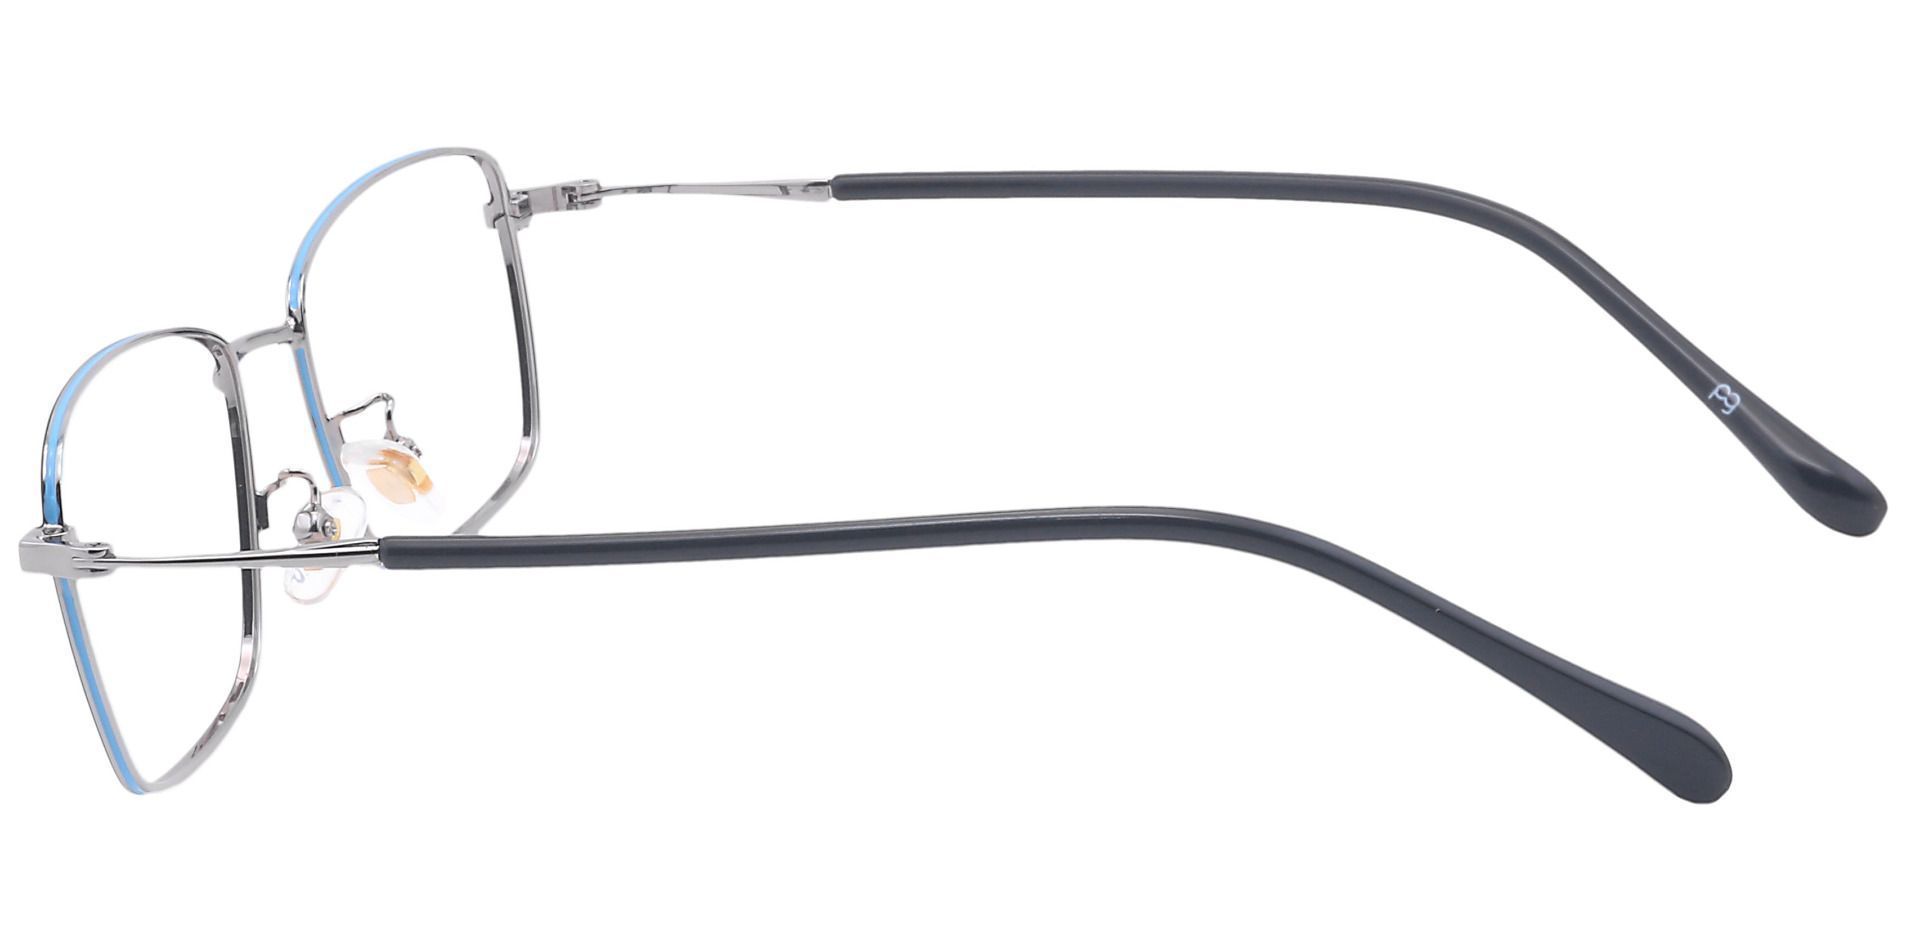 Diaz Rectangle Prescription Glasses - Clear